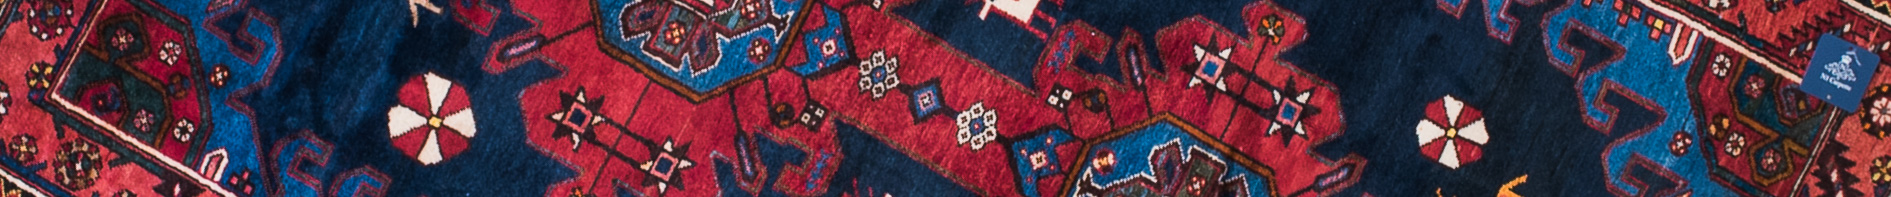 Nahavand Persian Carpet Rug N1Carpet Canada Montreal Tapis Persan 750